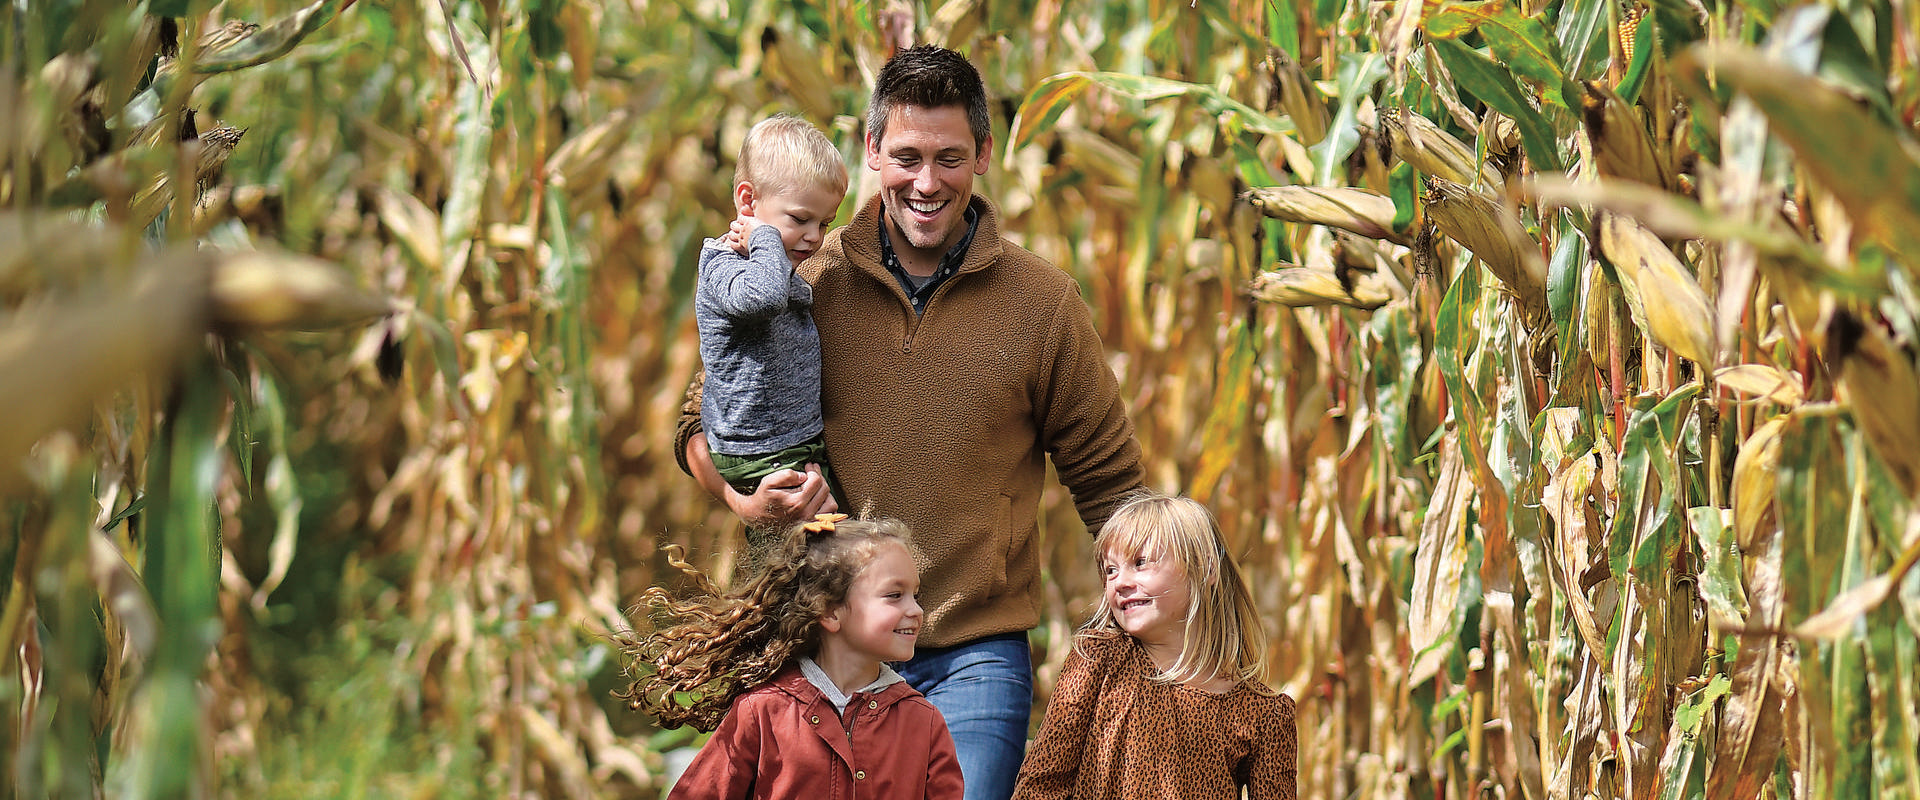   
																Top Five Ohio Corn Mazes 
															 